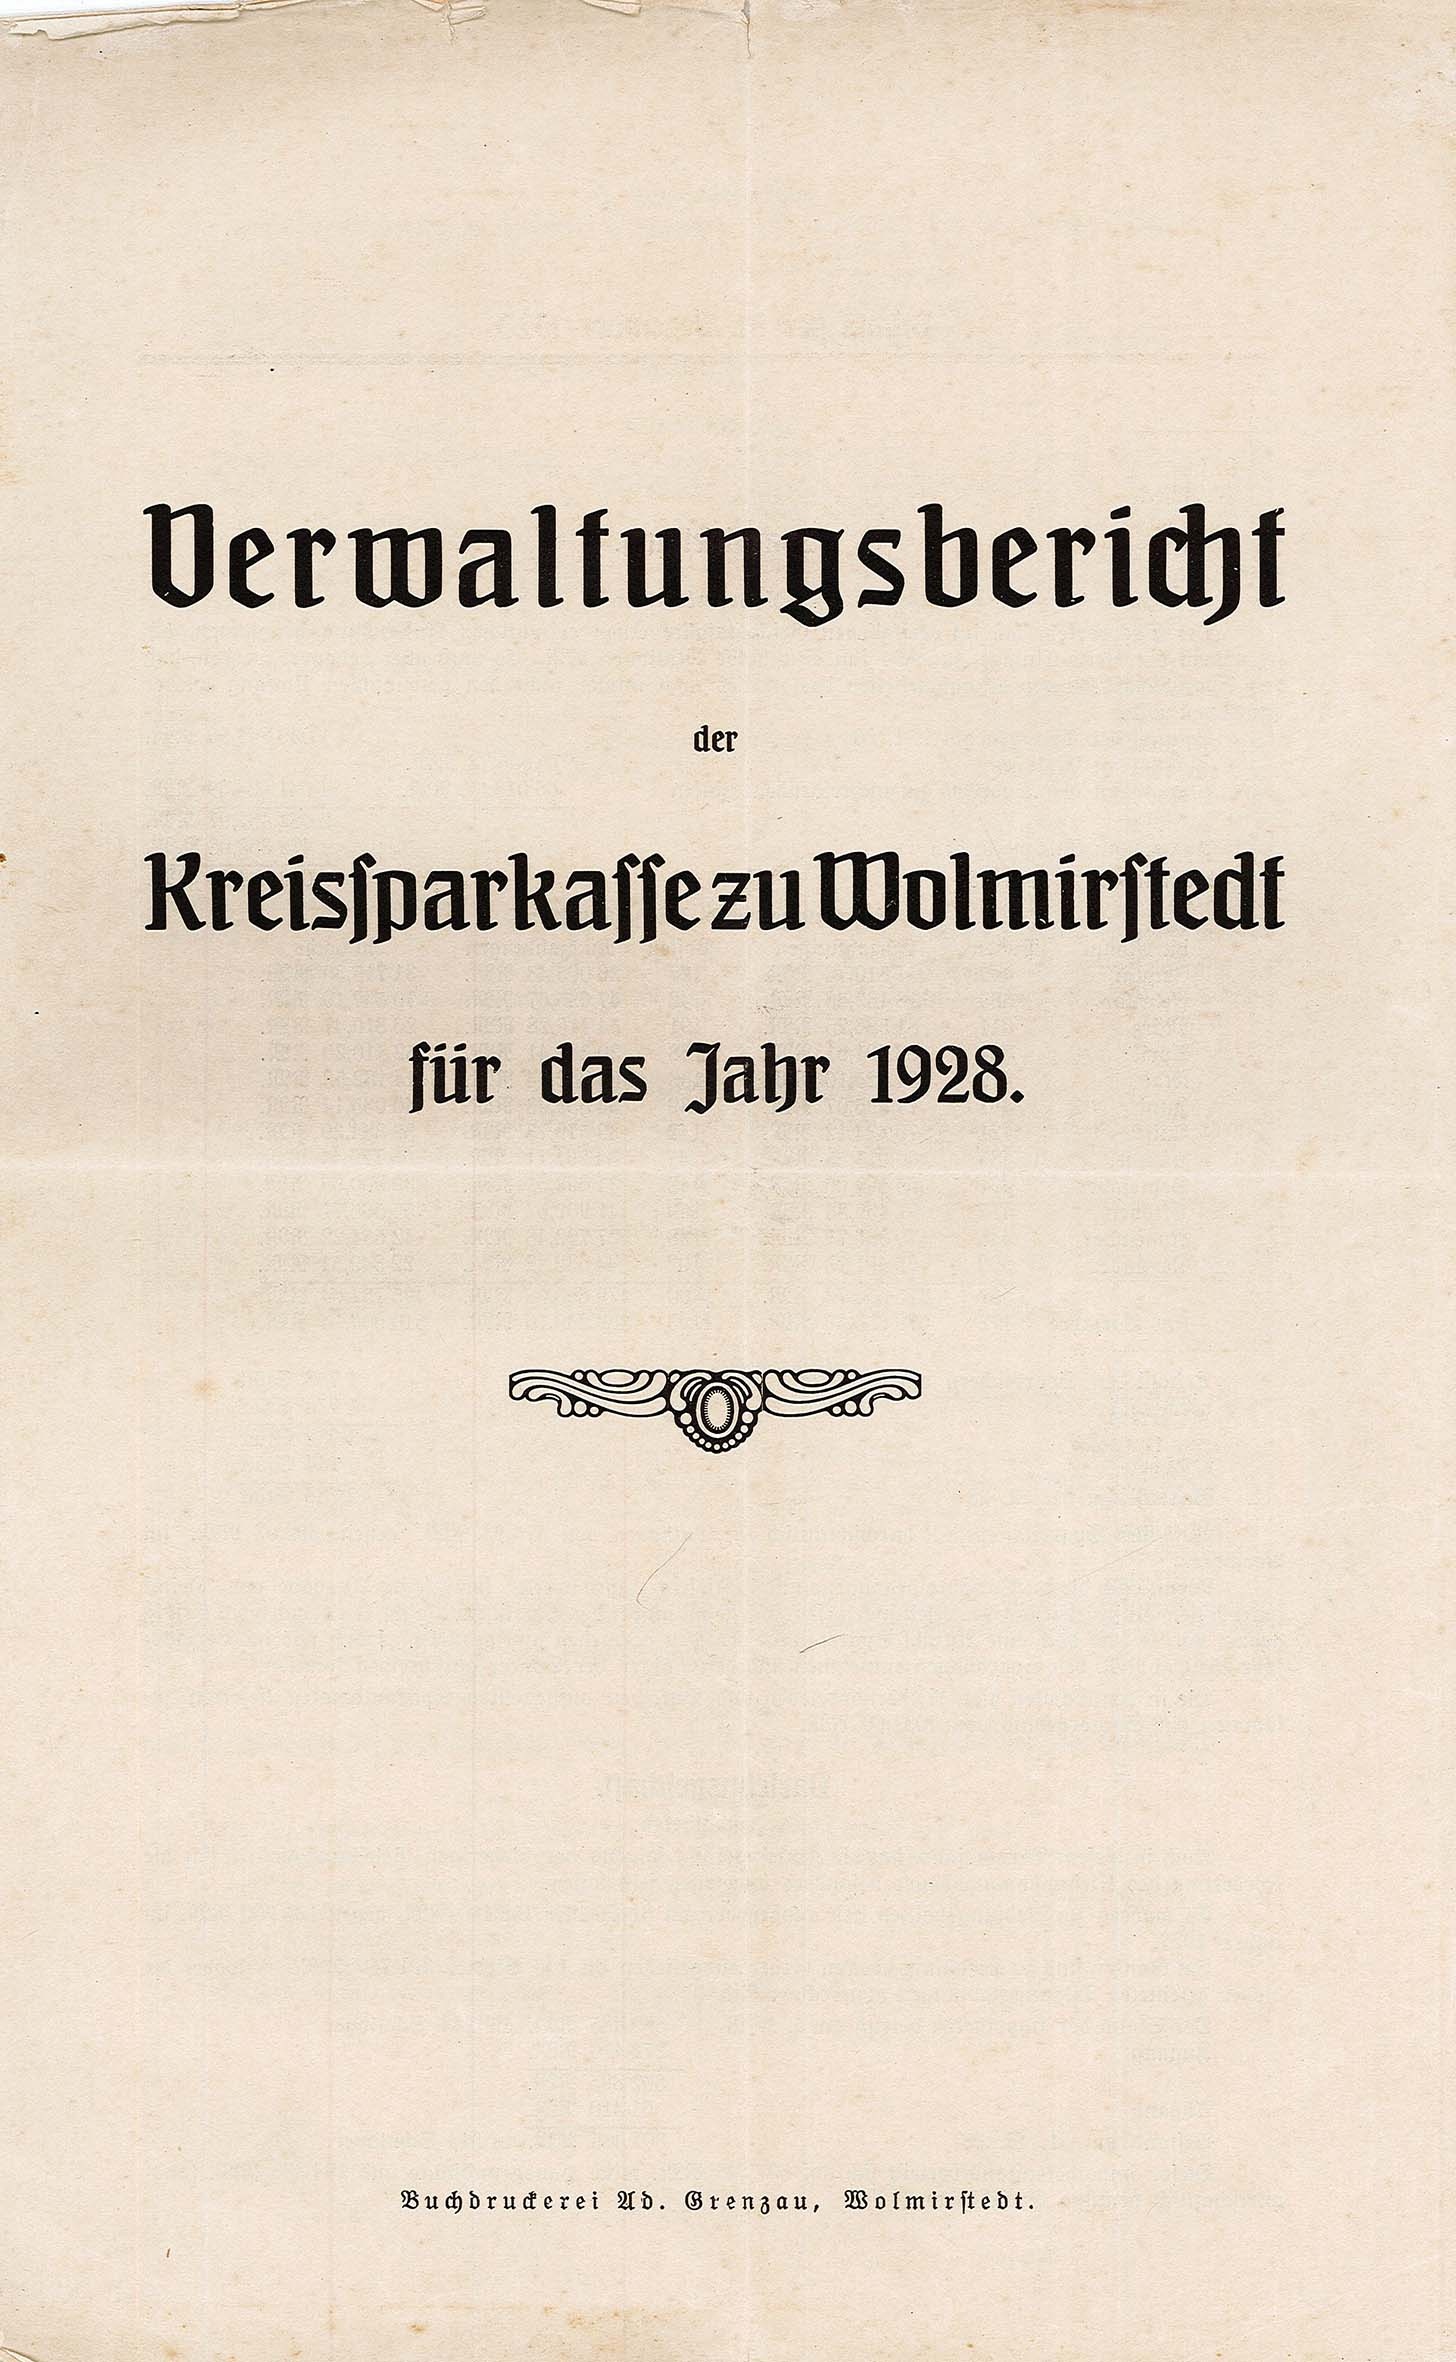 Verwaltungsbericht der Kreissparkasse Wolmirstedt für 1928 (Museum Wolmirstedt RR-F)